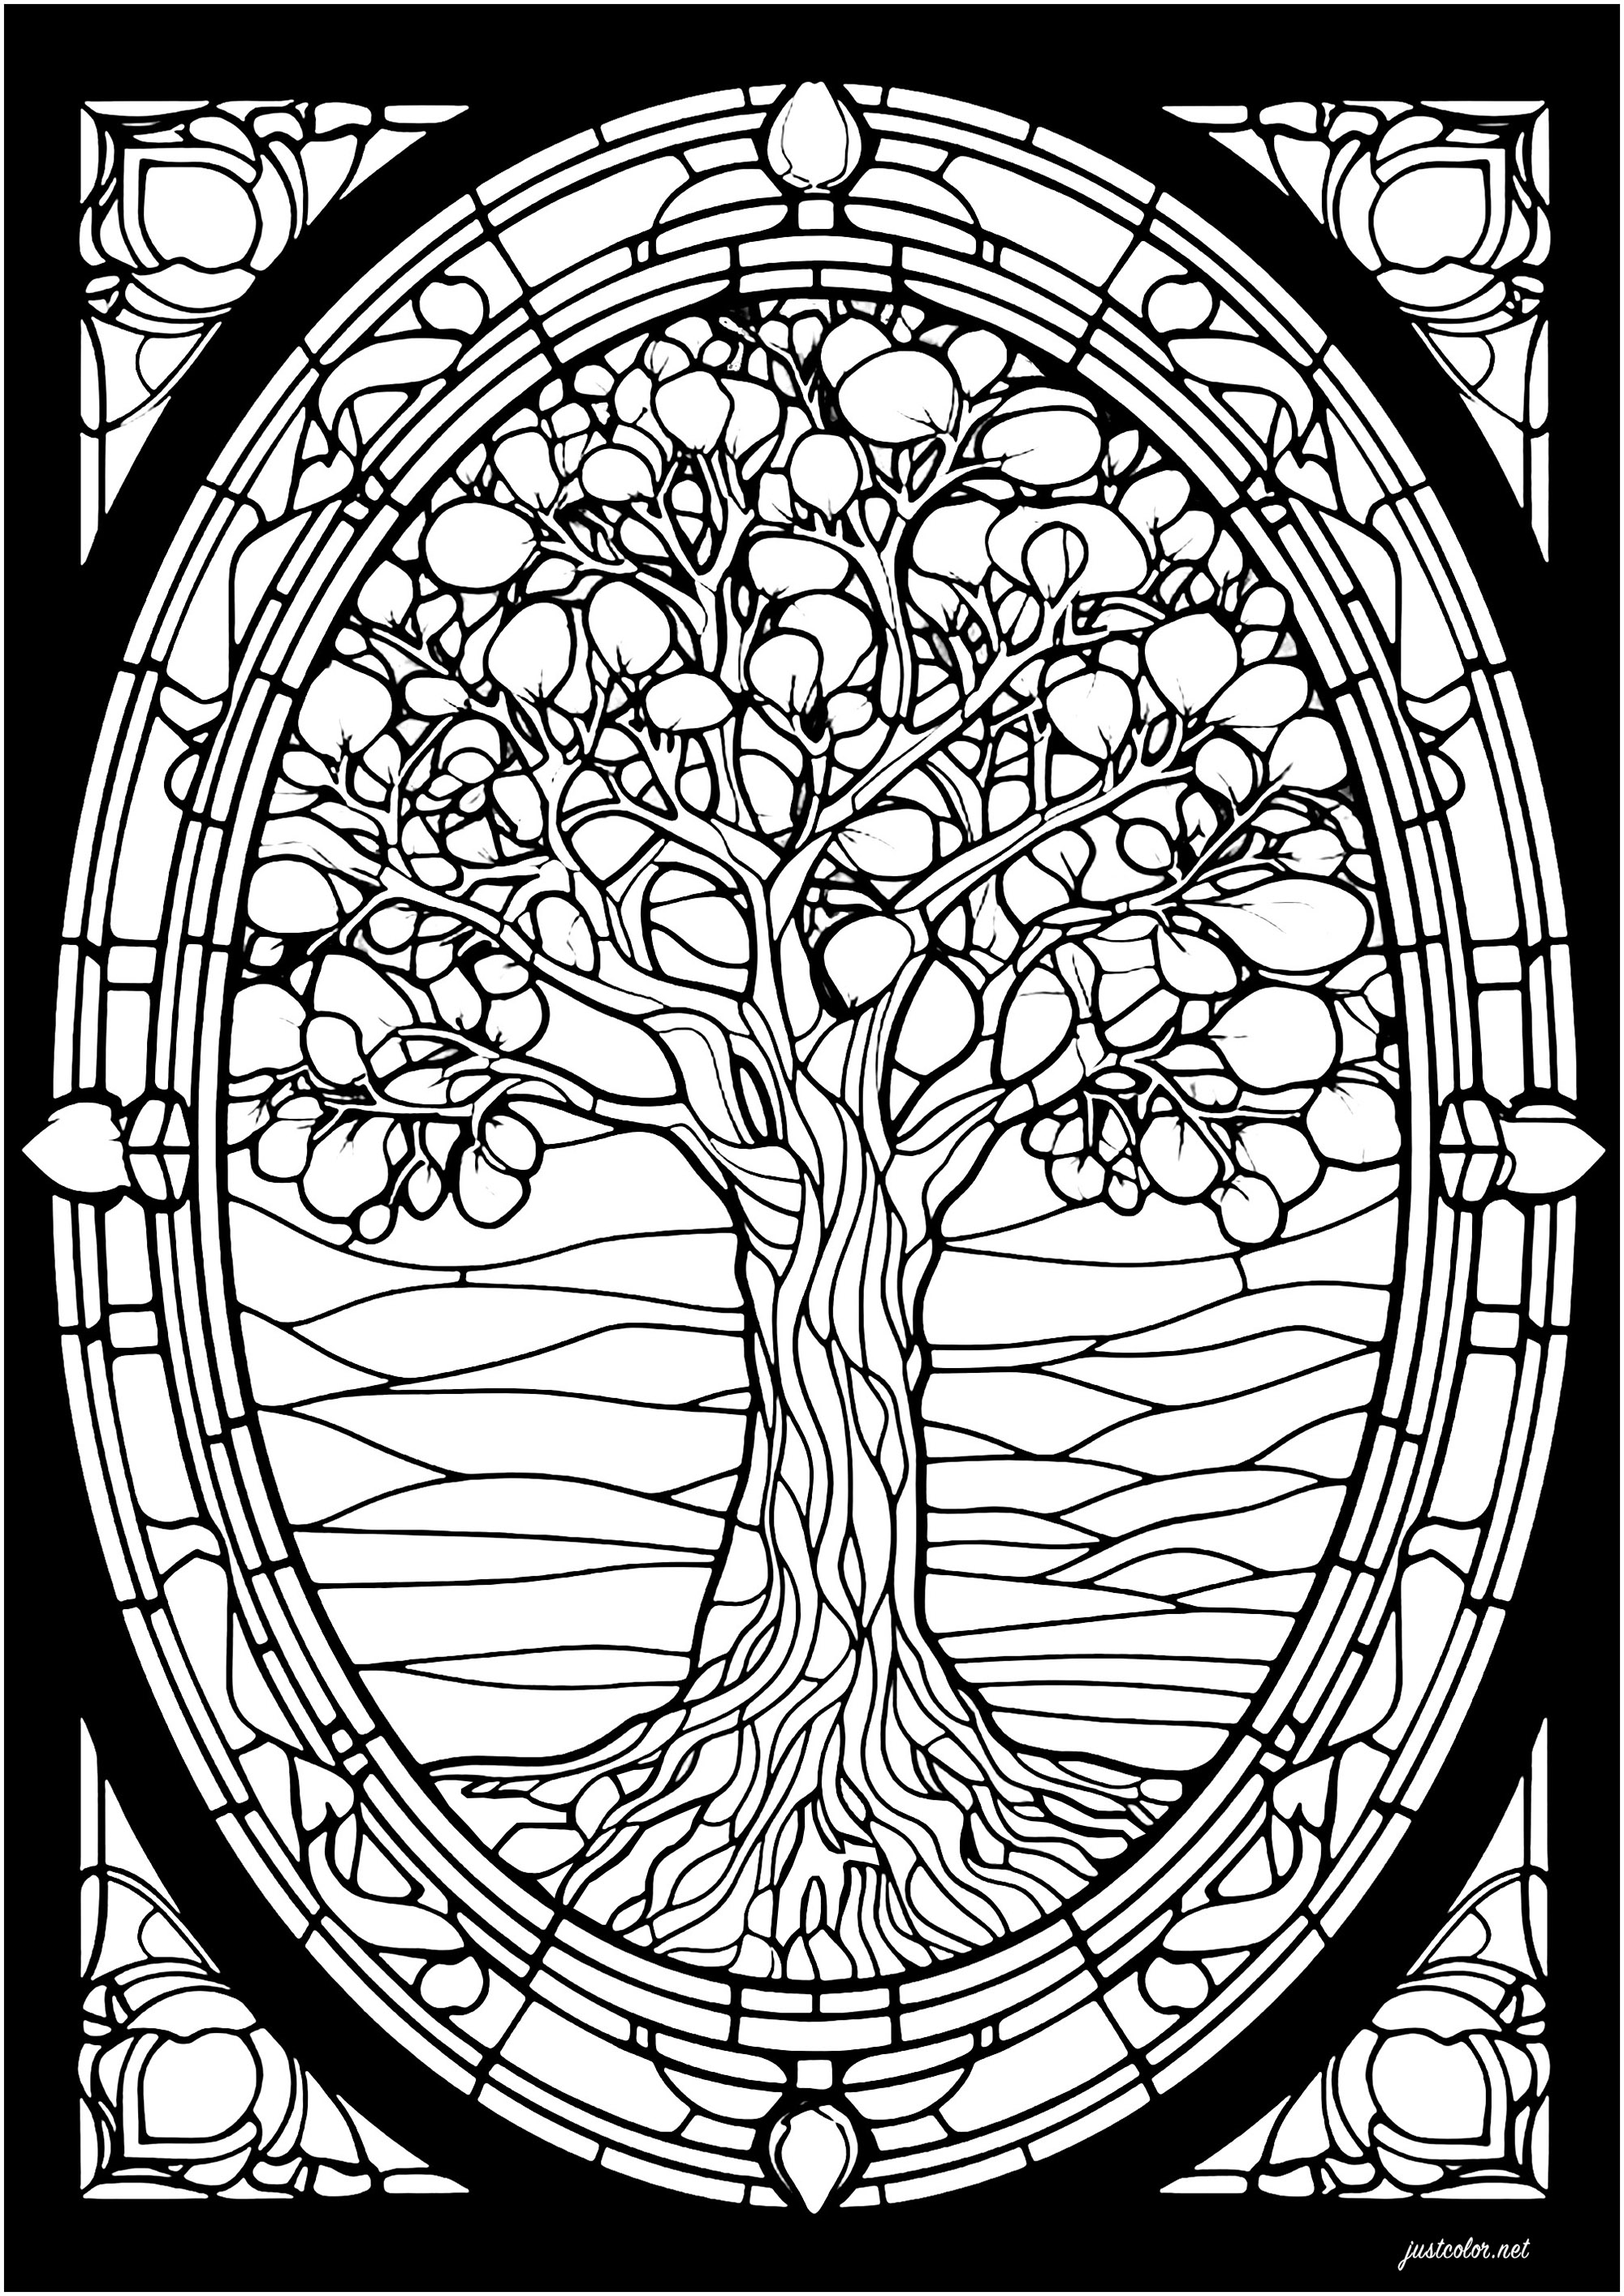 Baum mit Glasmalerei. Ein majestätischer Baum mit verschlungenen Mustern zum Ausmalen